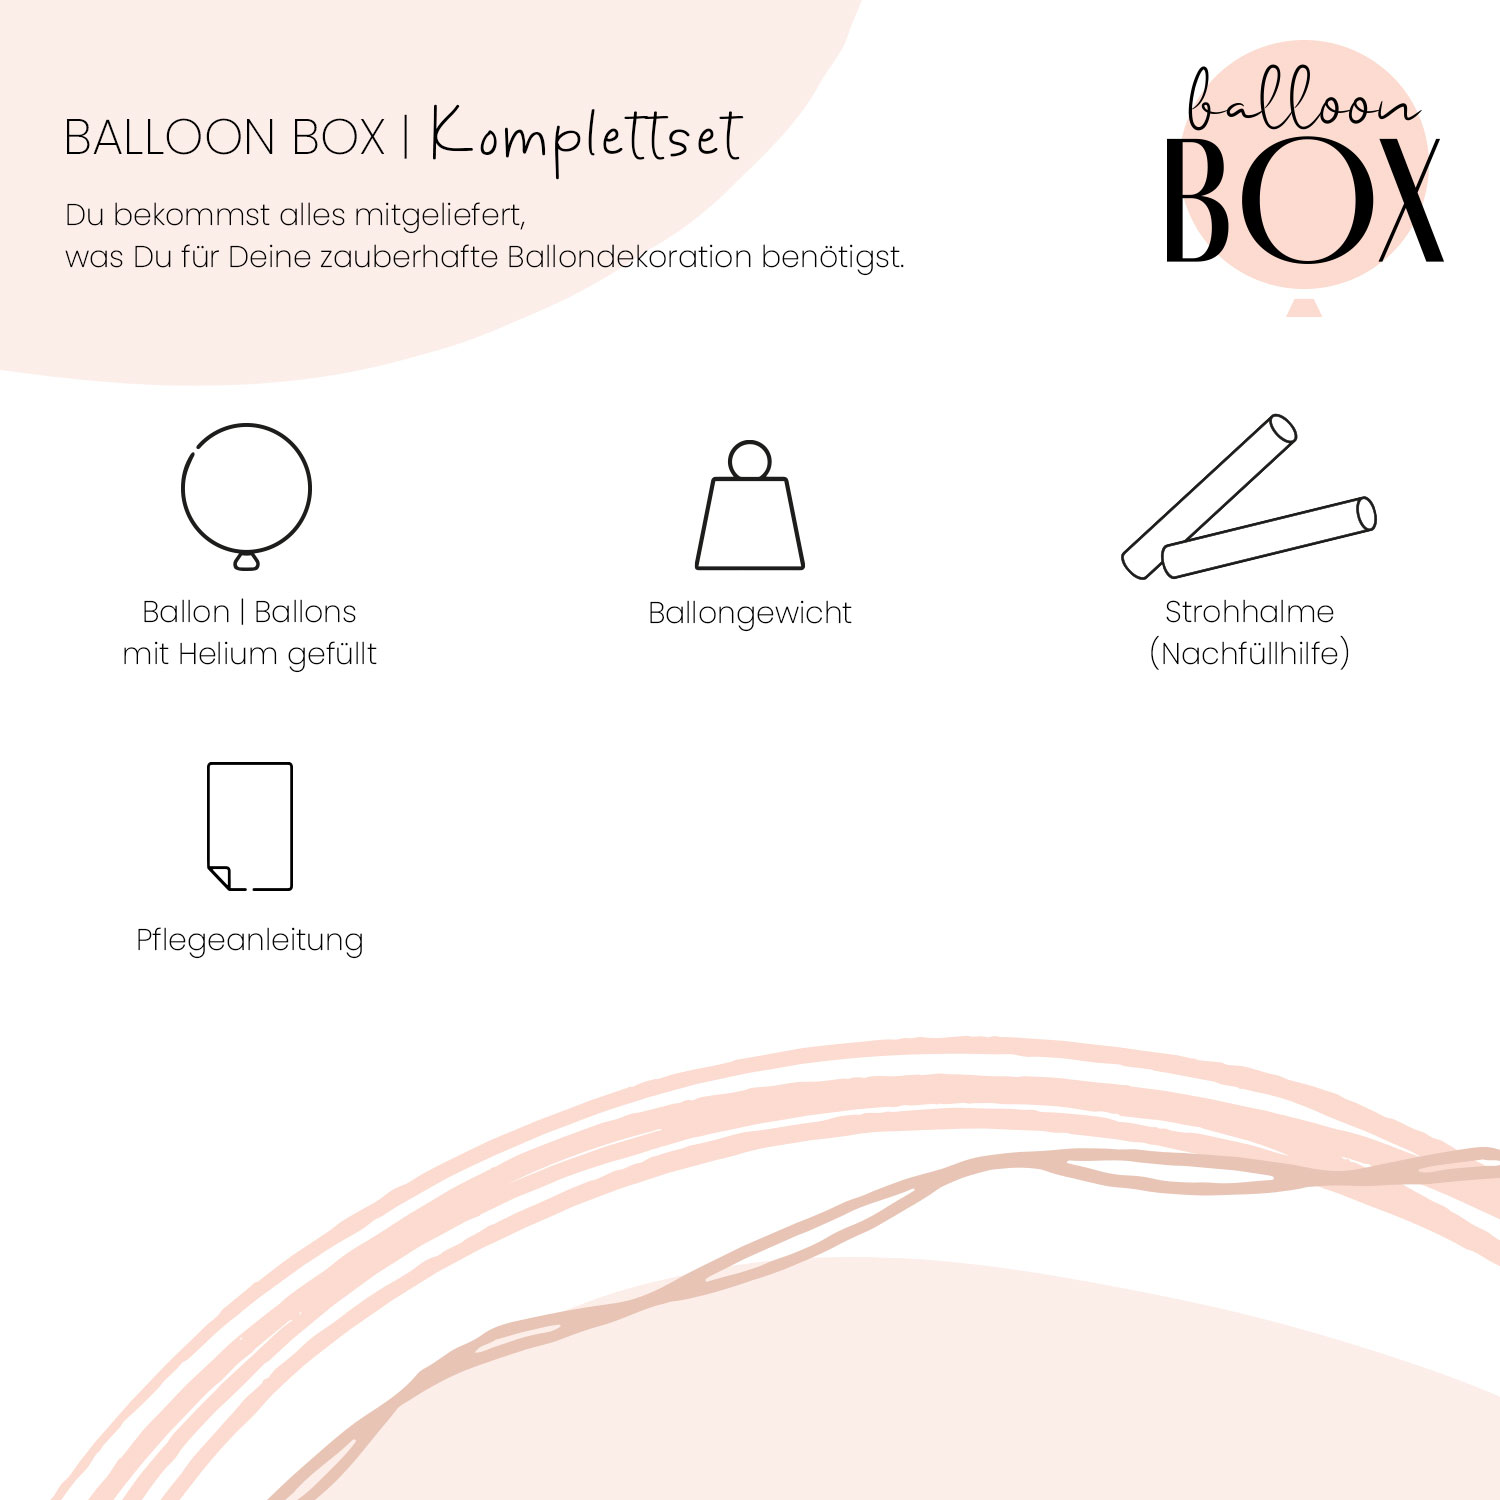 Fotoballon in a Box - Happy Day Cake